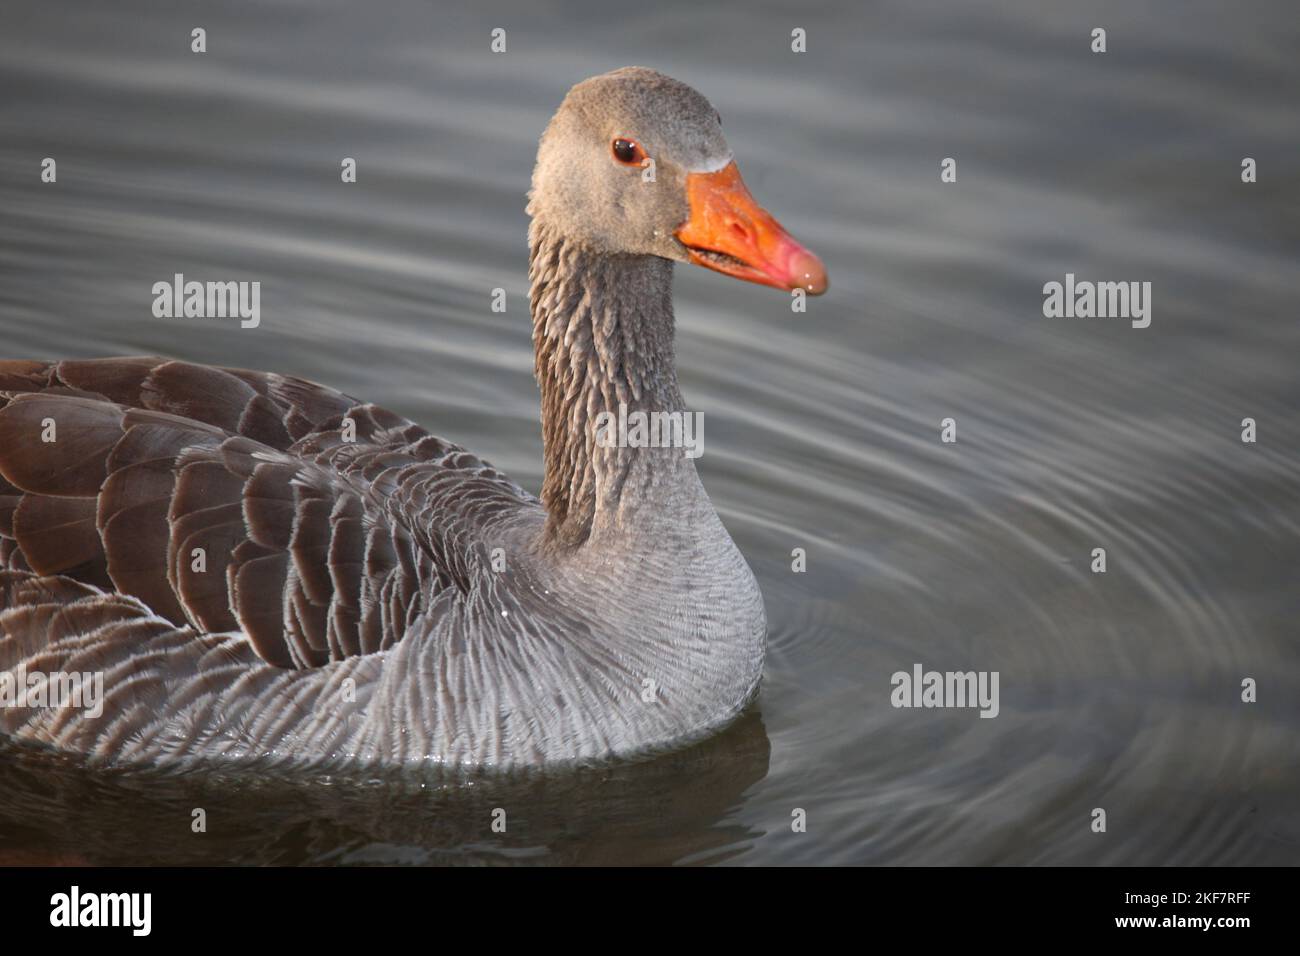 Graugans / Greylag goose / Anser anser Stock Photo